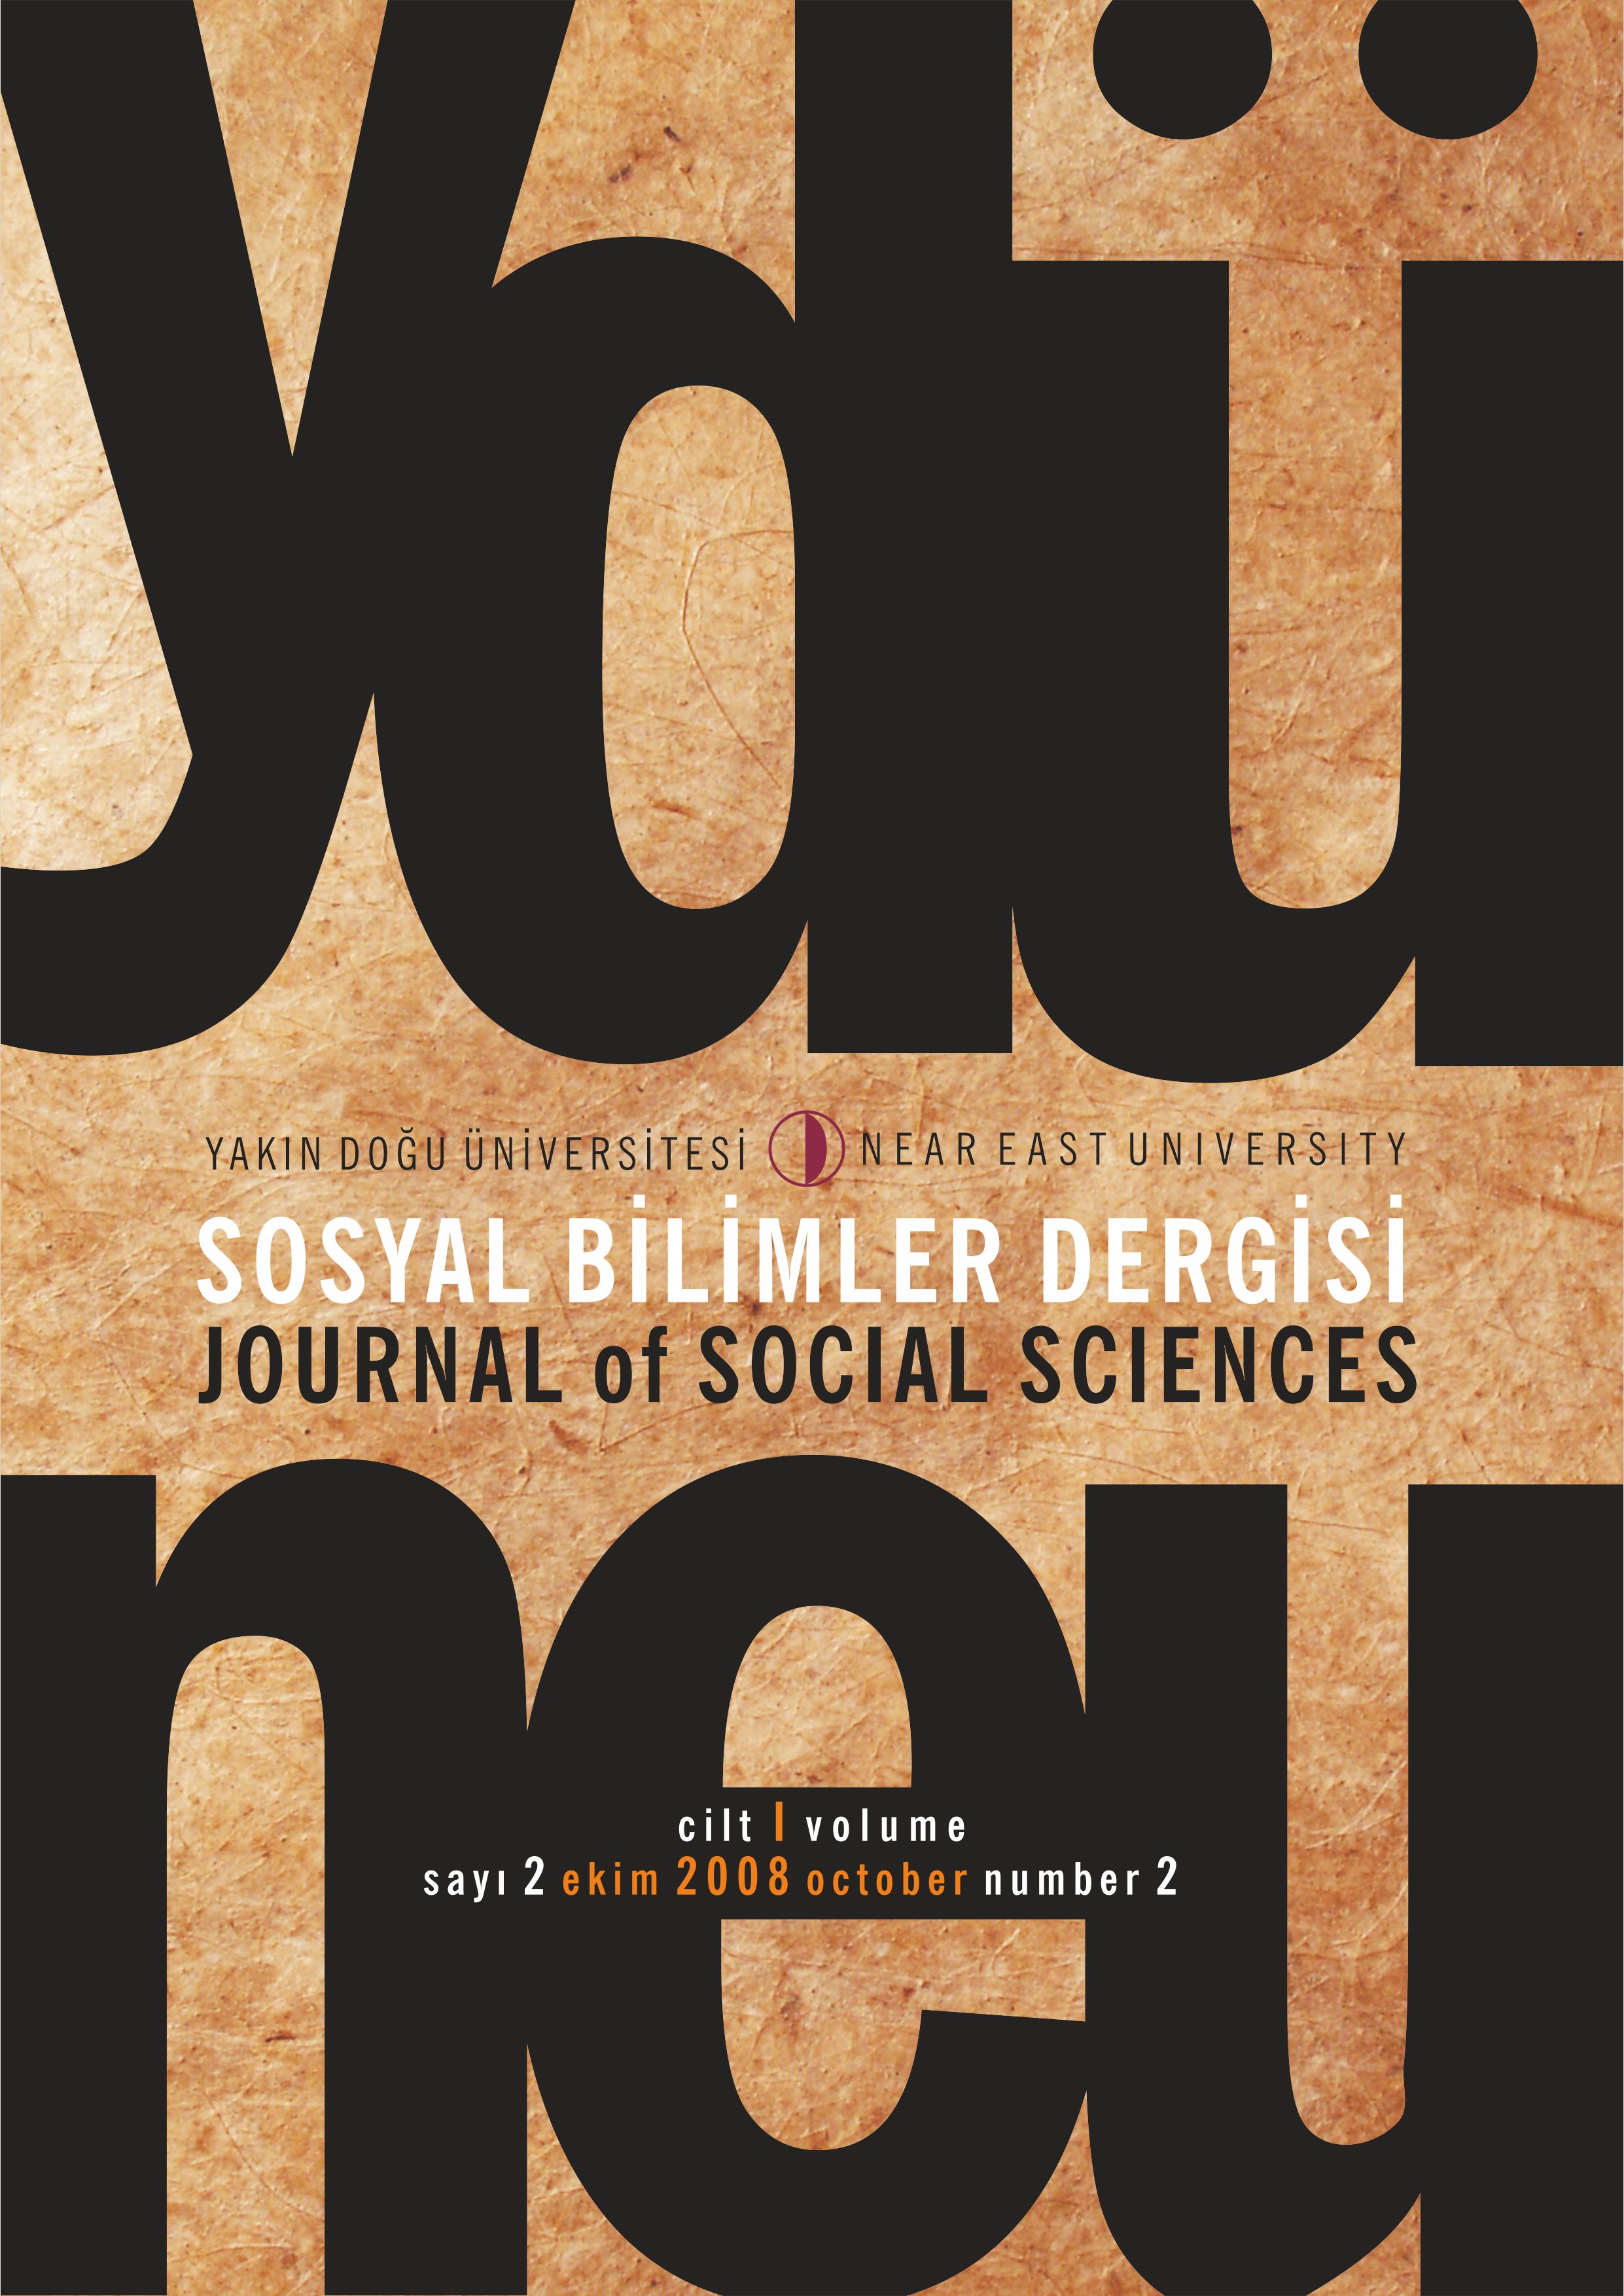 					Cilt 1 Sayı 2 (2008): Yakın Doğu Üniversitesi Sosyal Bilimler Dergisi Gör
				